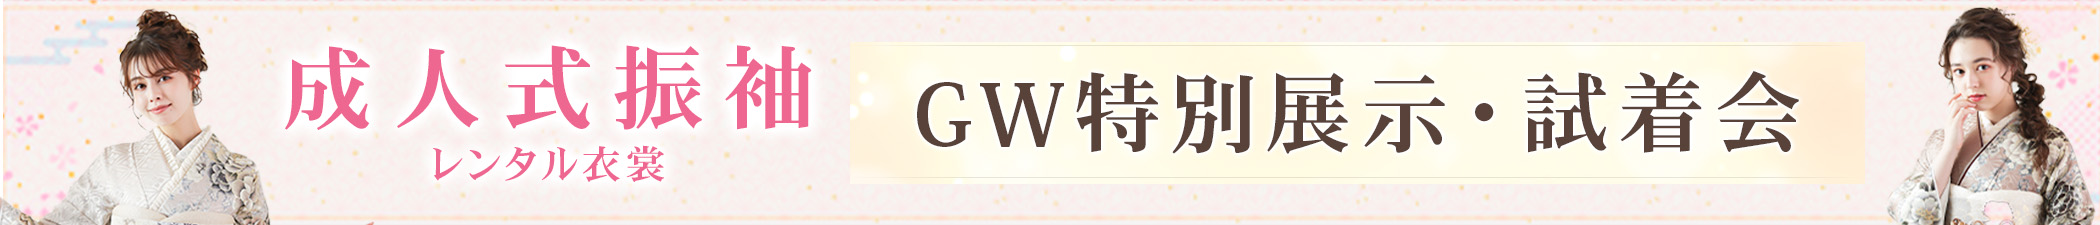 成人式振袖のレンタル衣裳 GW特別展示・試着会